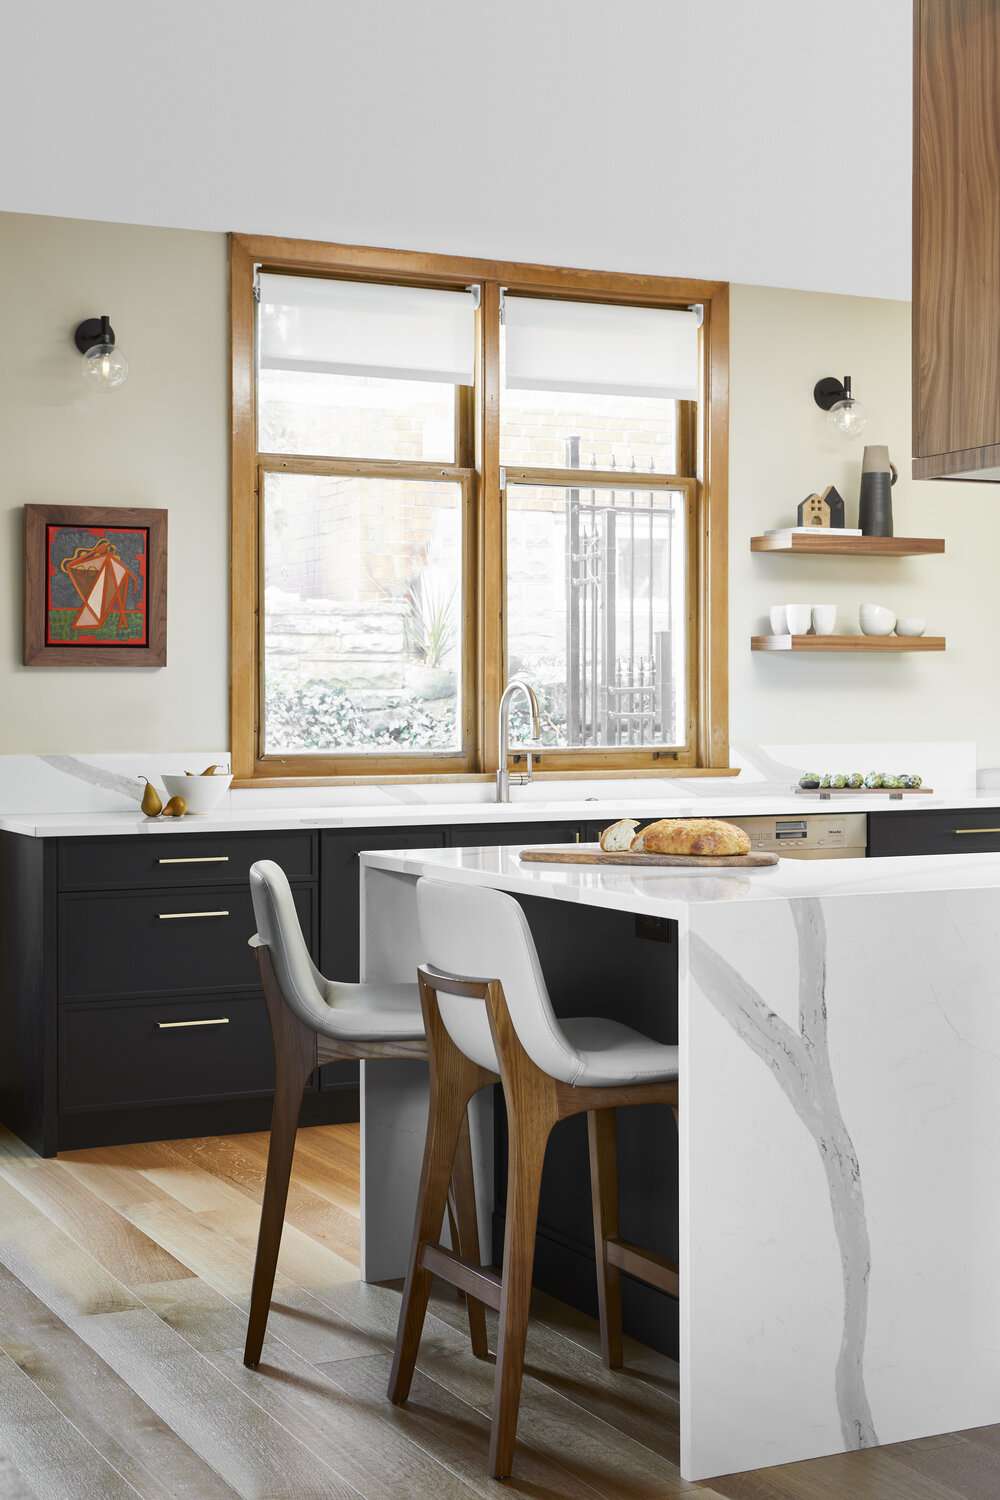 cozinha branca moderna, ilha de mármore, detalhes em madeira